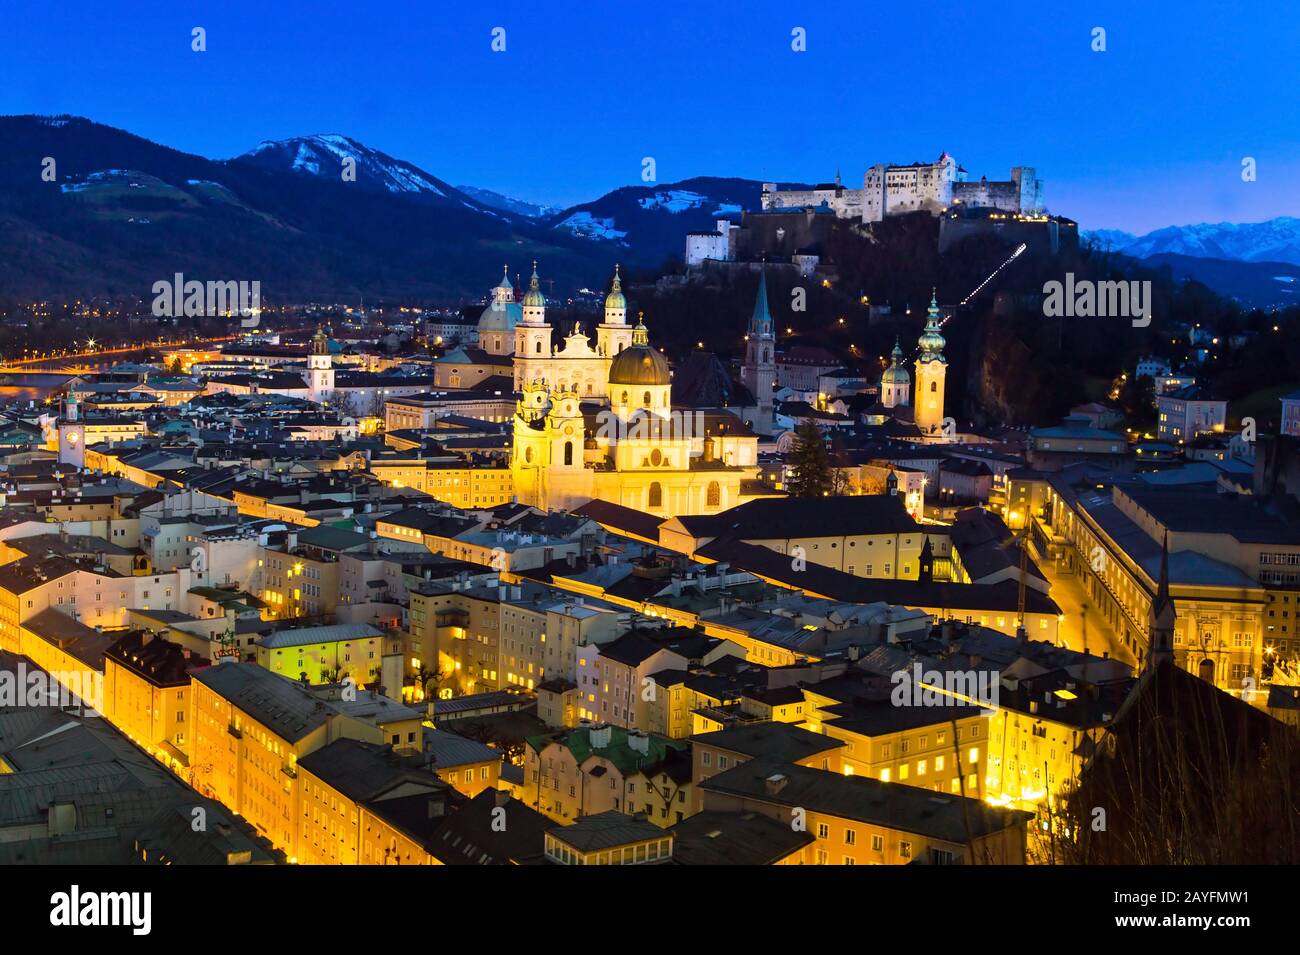 Ein Blick auf Salzburg in Oesterreich.. Altstadt und Festung Hohensalzburg, blaue Stunde, Stock Photo